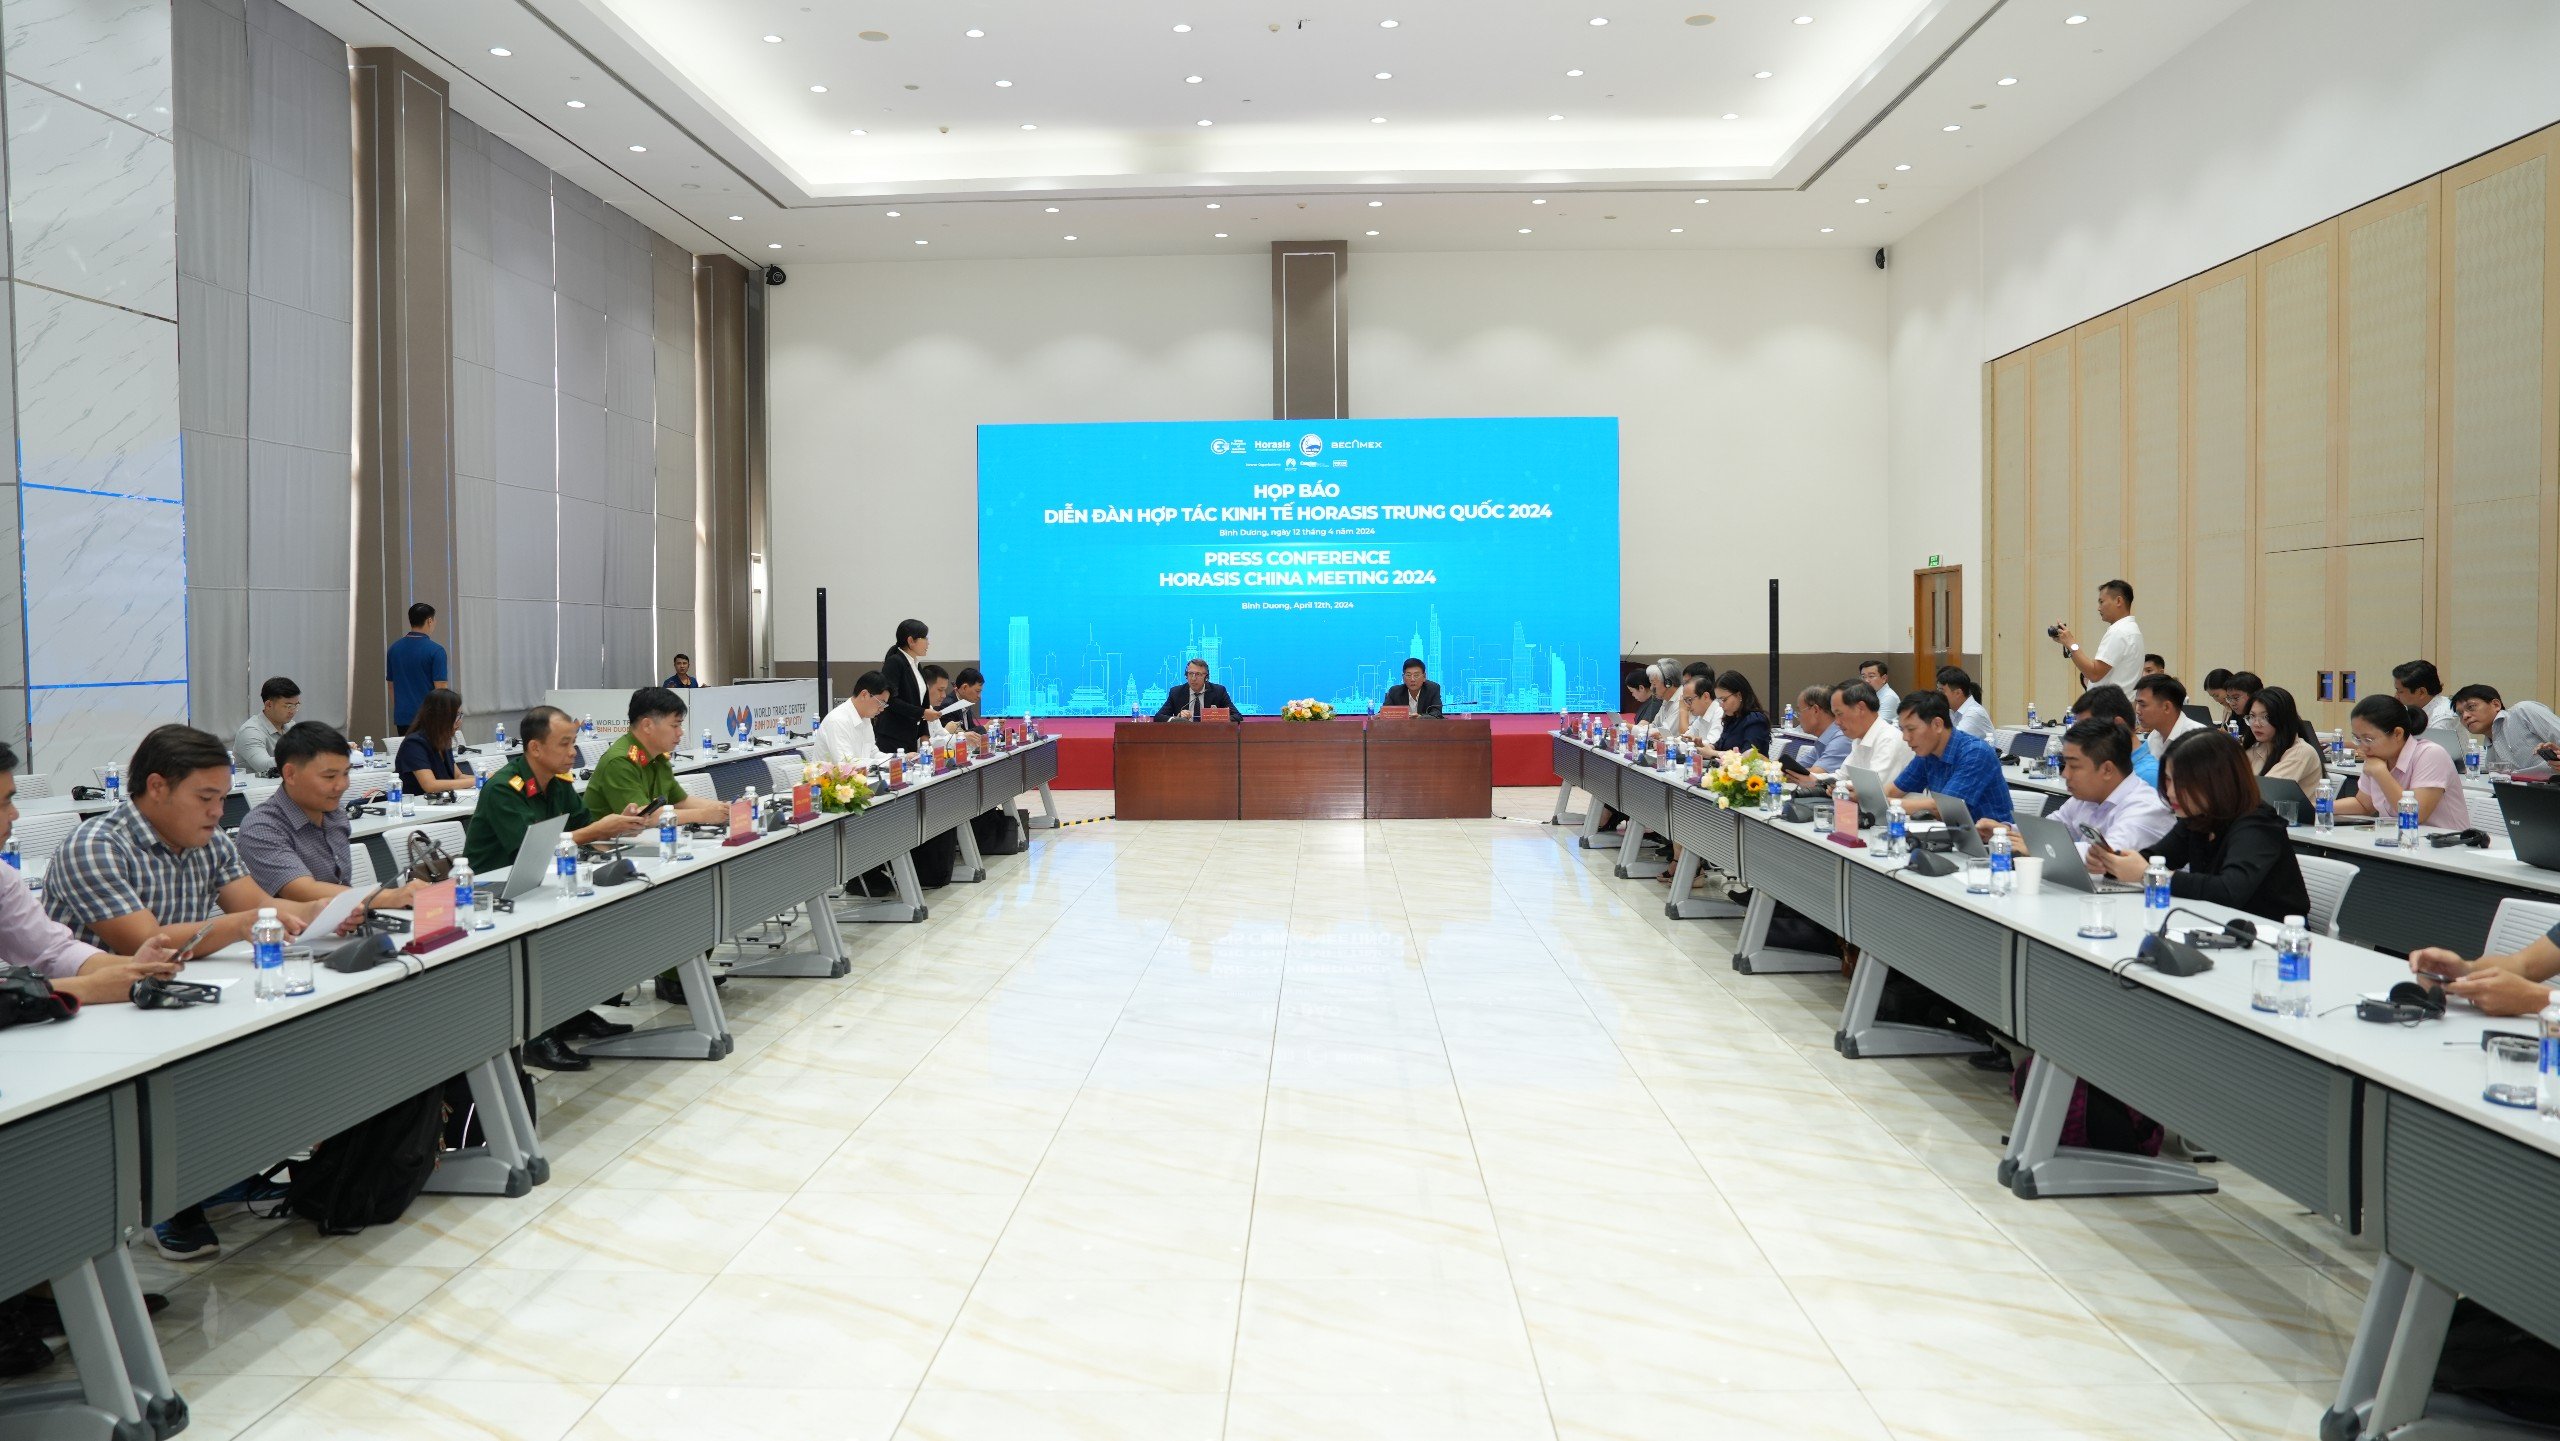 Quang cảnh buổi họp báo về Diễn đàn hợp tác kinh tế Horasis Trung Quốc 2024 do UBND tỉnh Bình Dương phối hợp cùng Tổ chức Horasis, Liên đoàn Kinh tế Công nghiệp Trung Quốc chủ trì và tổ chức.